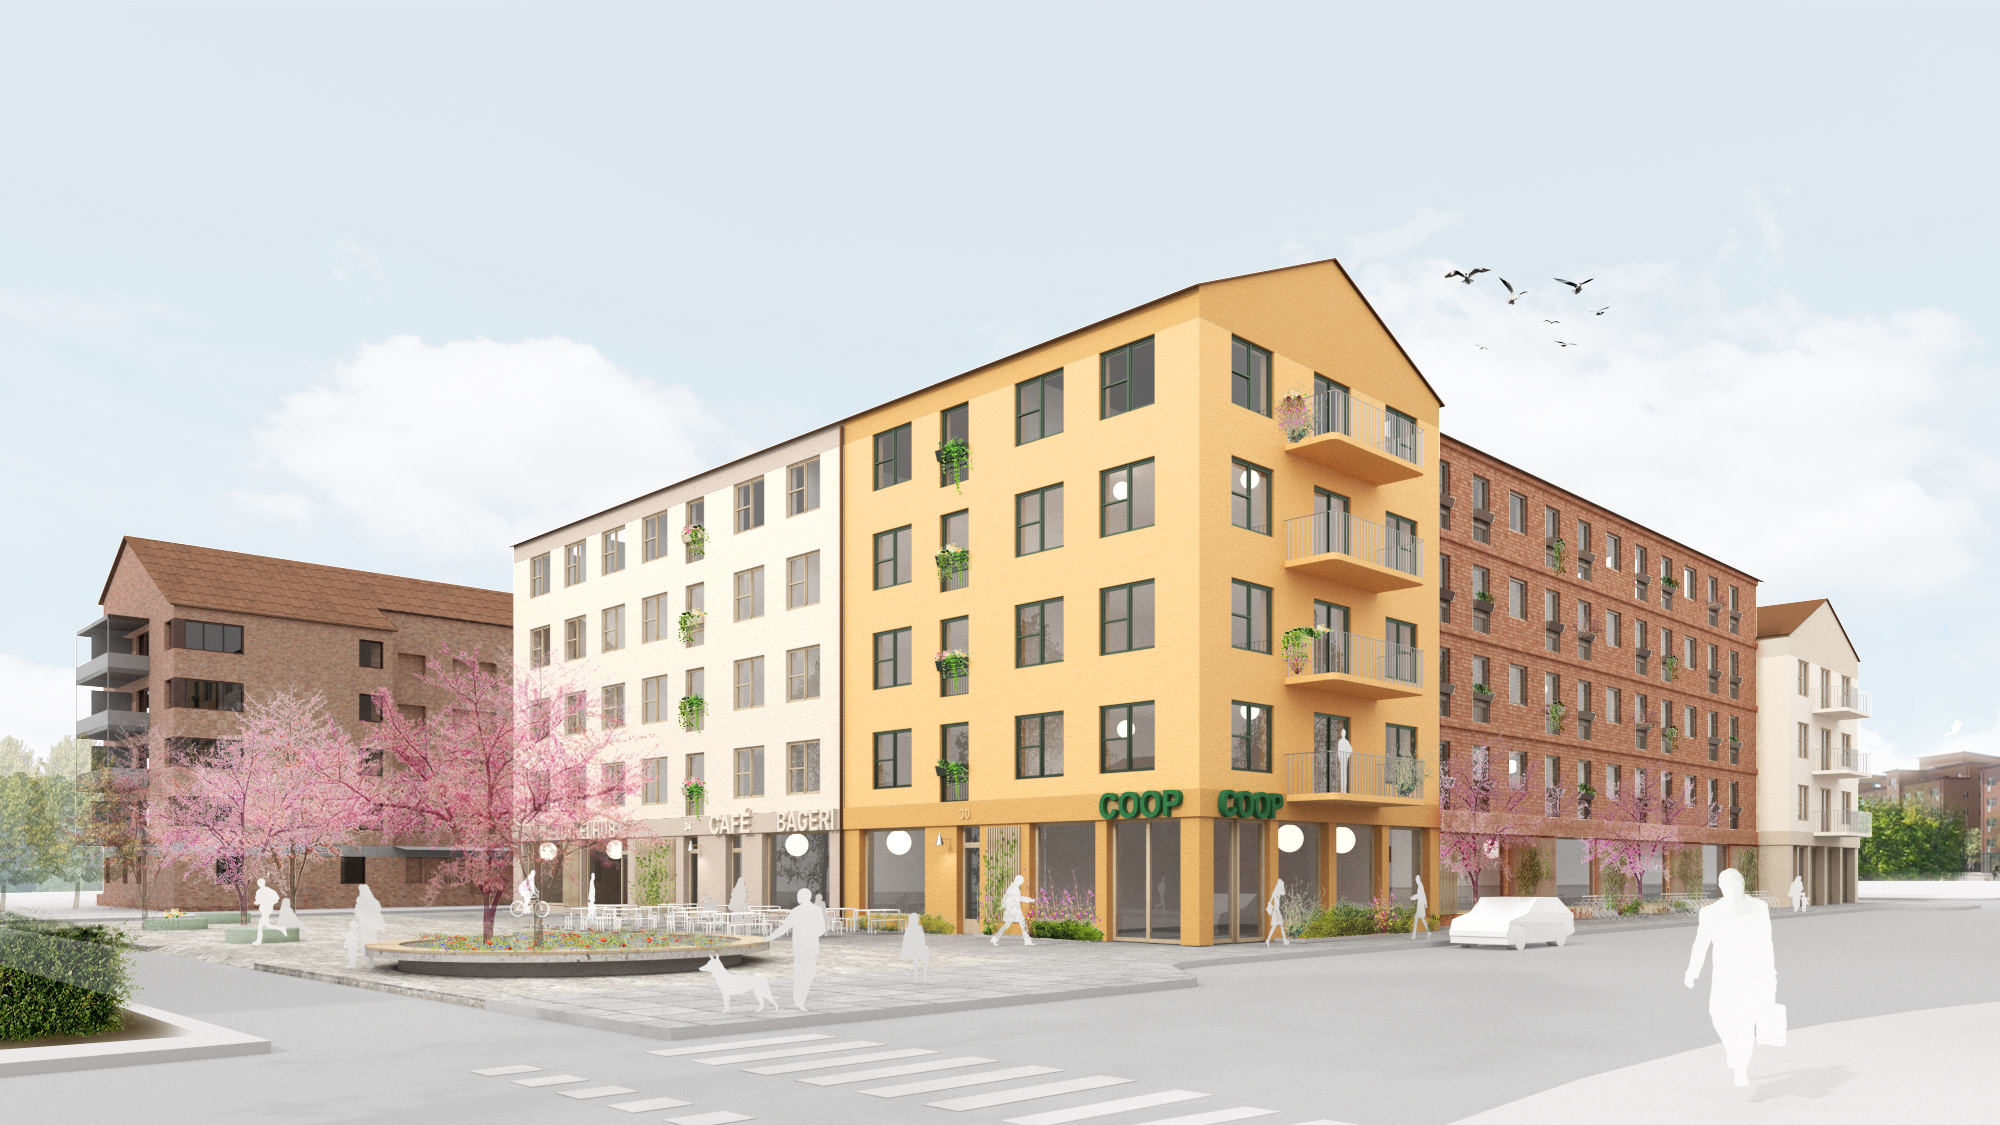 Illustration över hur Hindsgavl kan utvecklas enligt förslaget. Gula och tegelfärgade byggnader 4-5 våningar höga som är tänkta att smälta in i befintlig miljö.